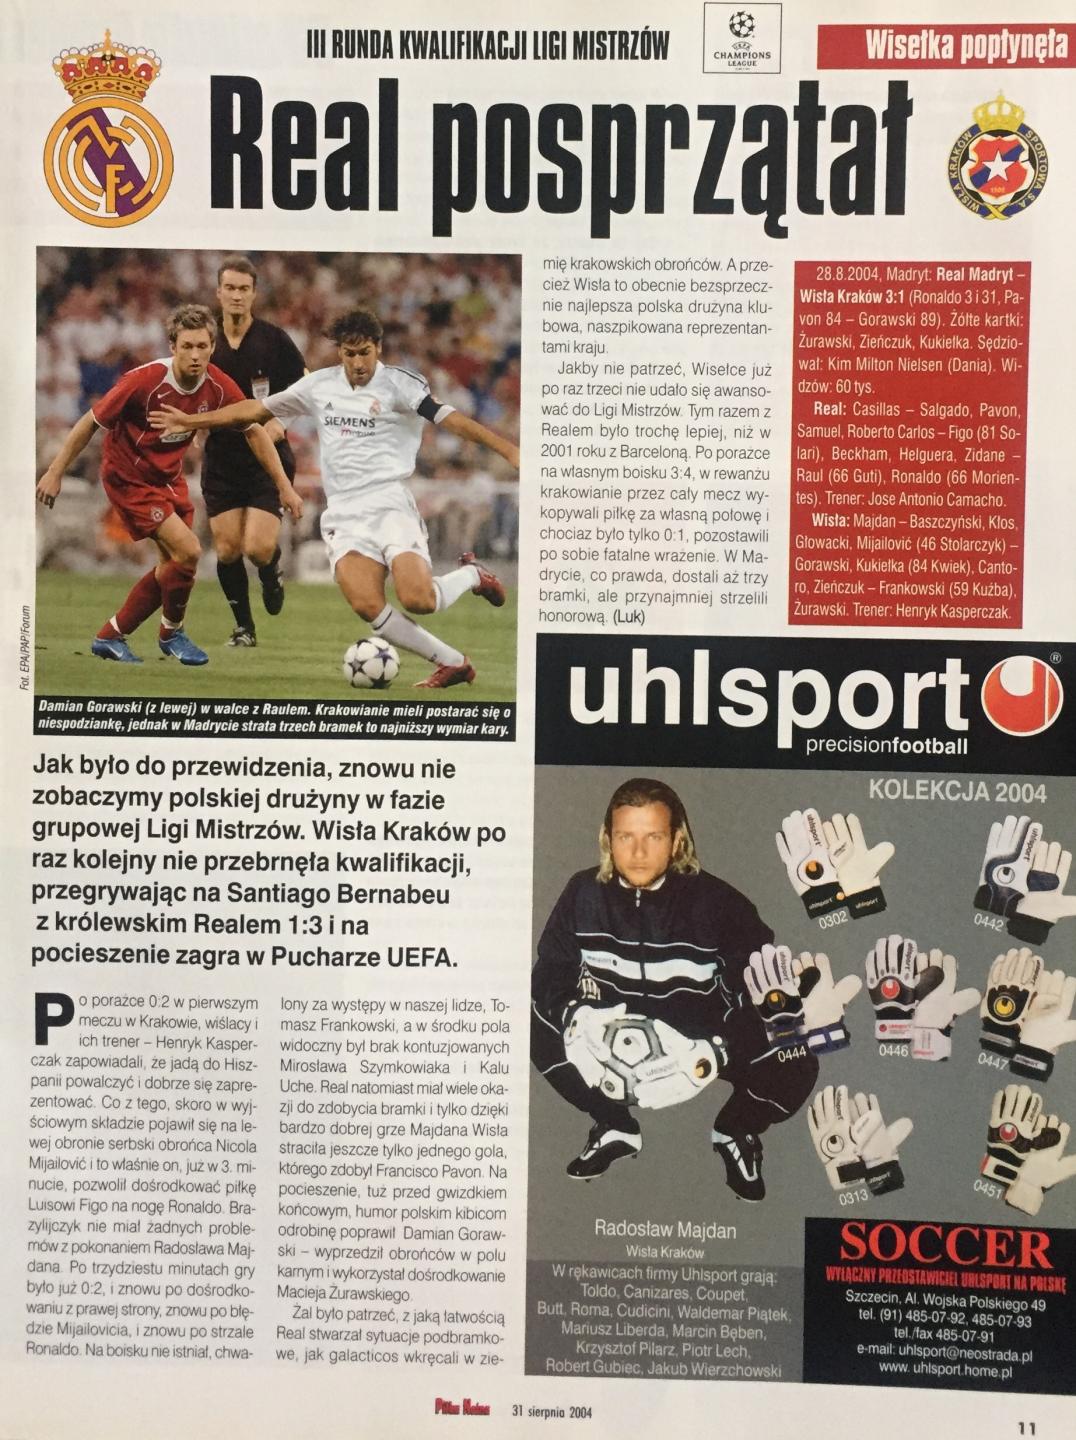 Piłka Nożna po Real Madryt - Wisła Kraków 3:1 (25.08.2004) 2